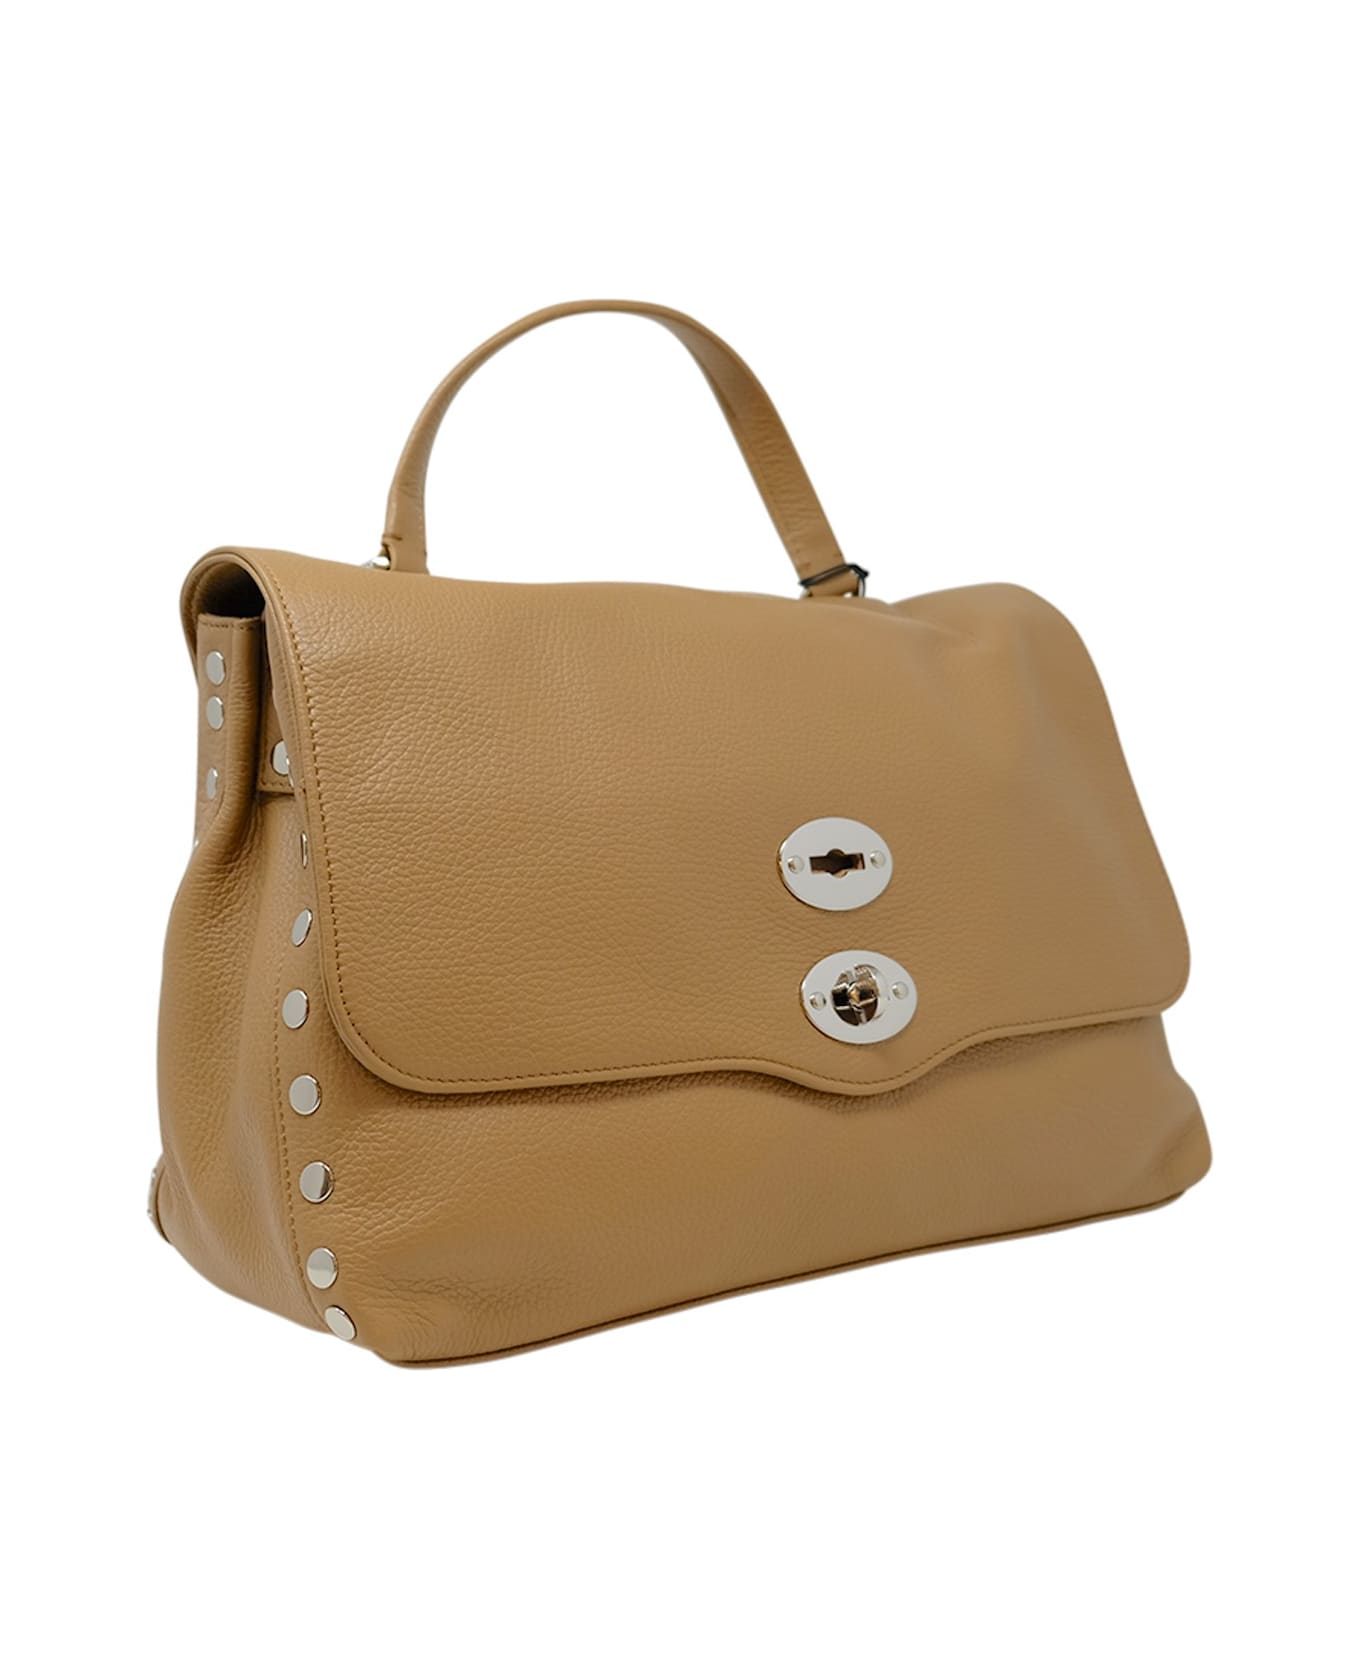 Zanellato 068010-0050000-z0260 Postina Daily Giorno M Cappuccino Leather Handbag - BEIGE